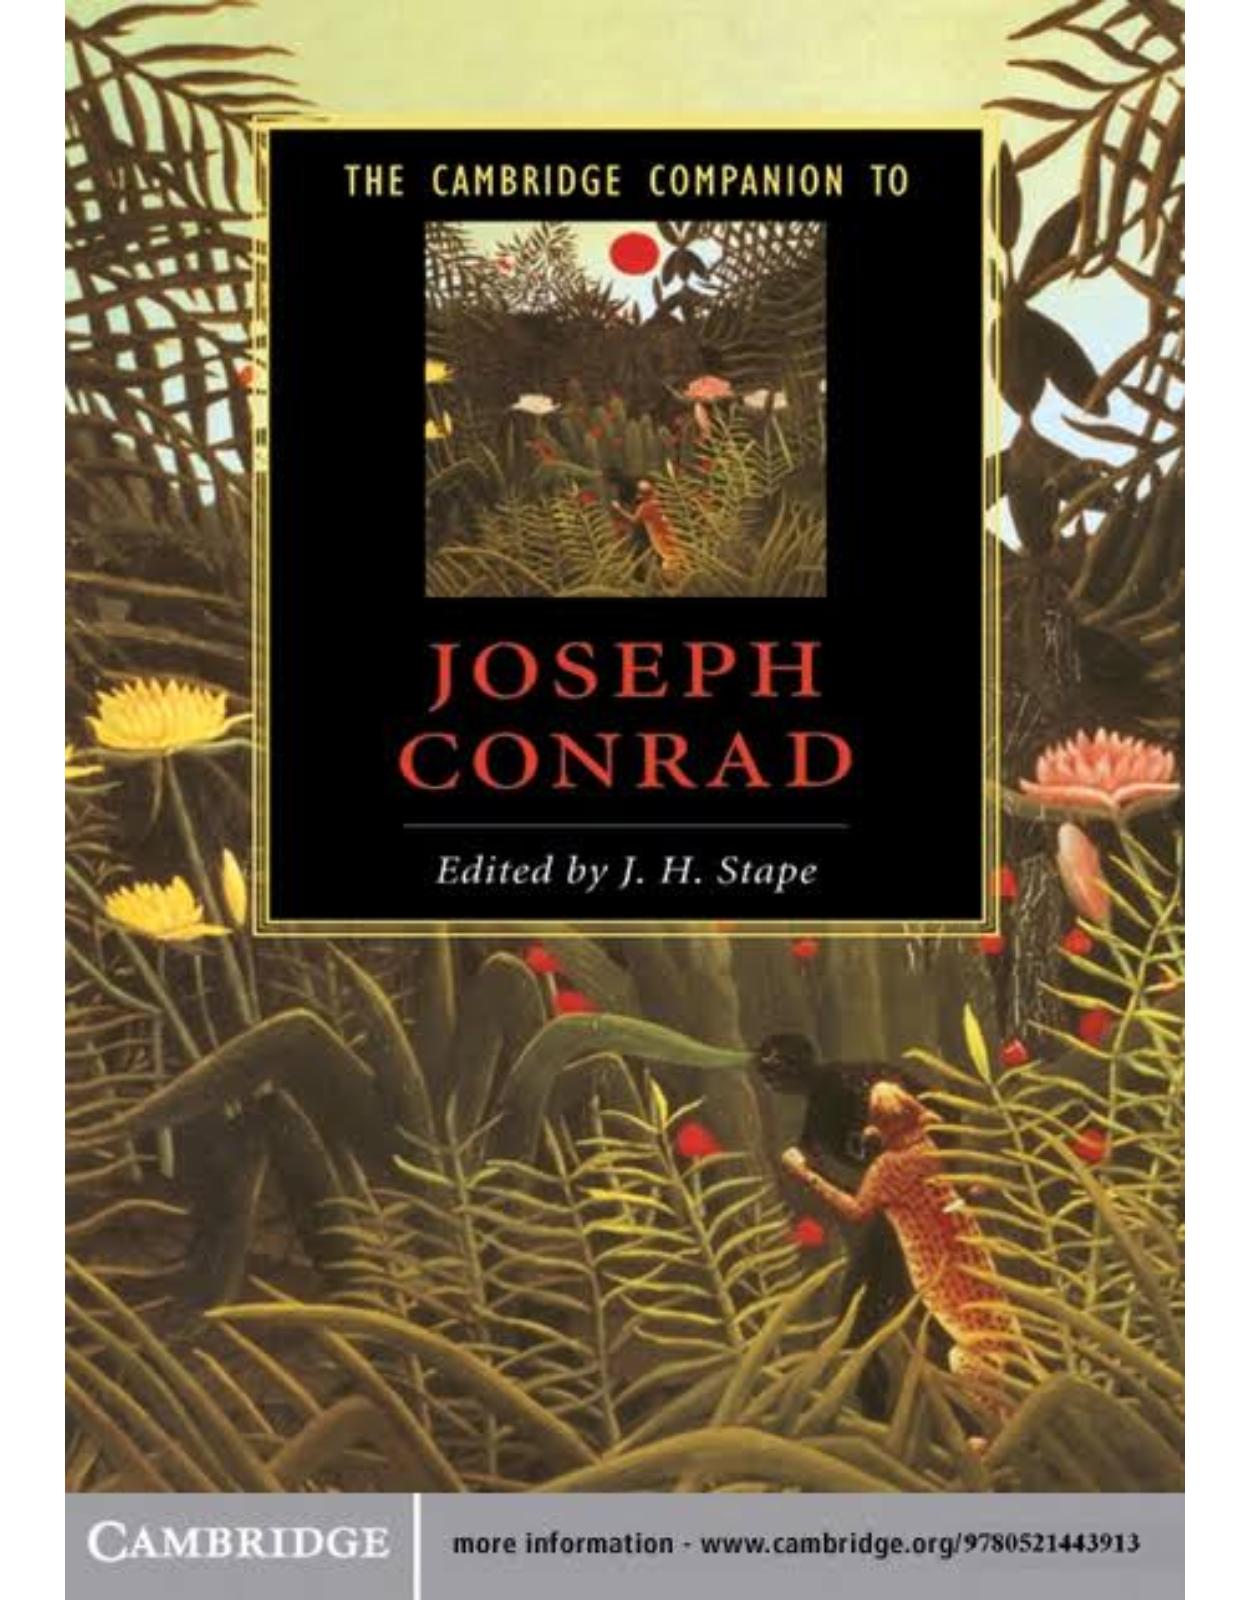 The Cambridge Companion to Joseph Conrad (Cambridge Companions to Literature)